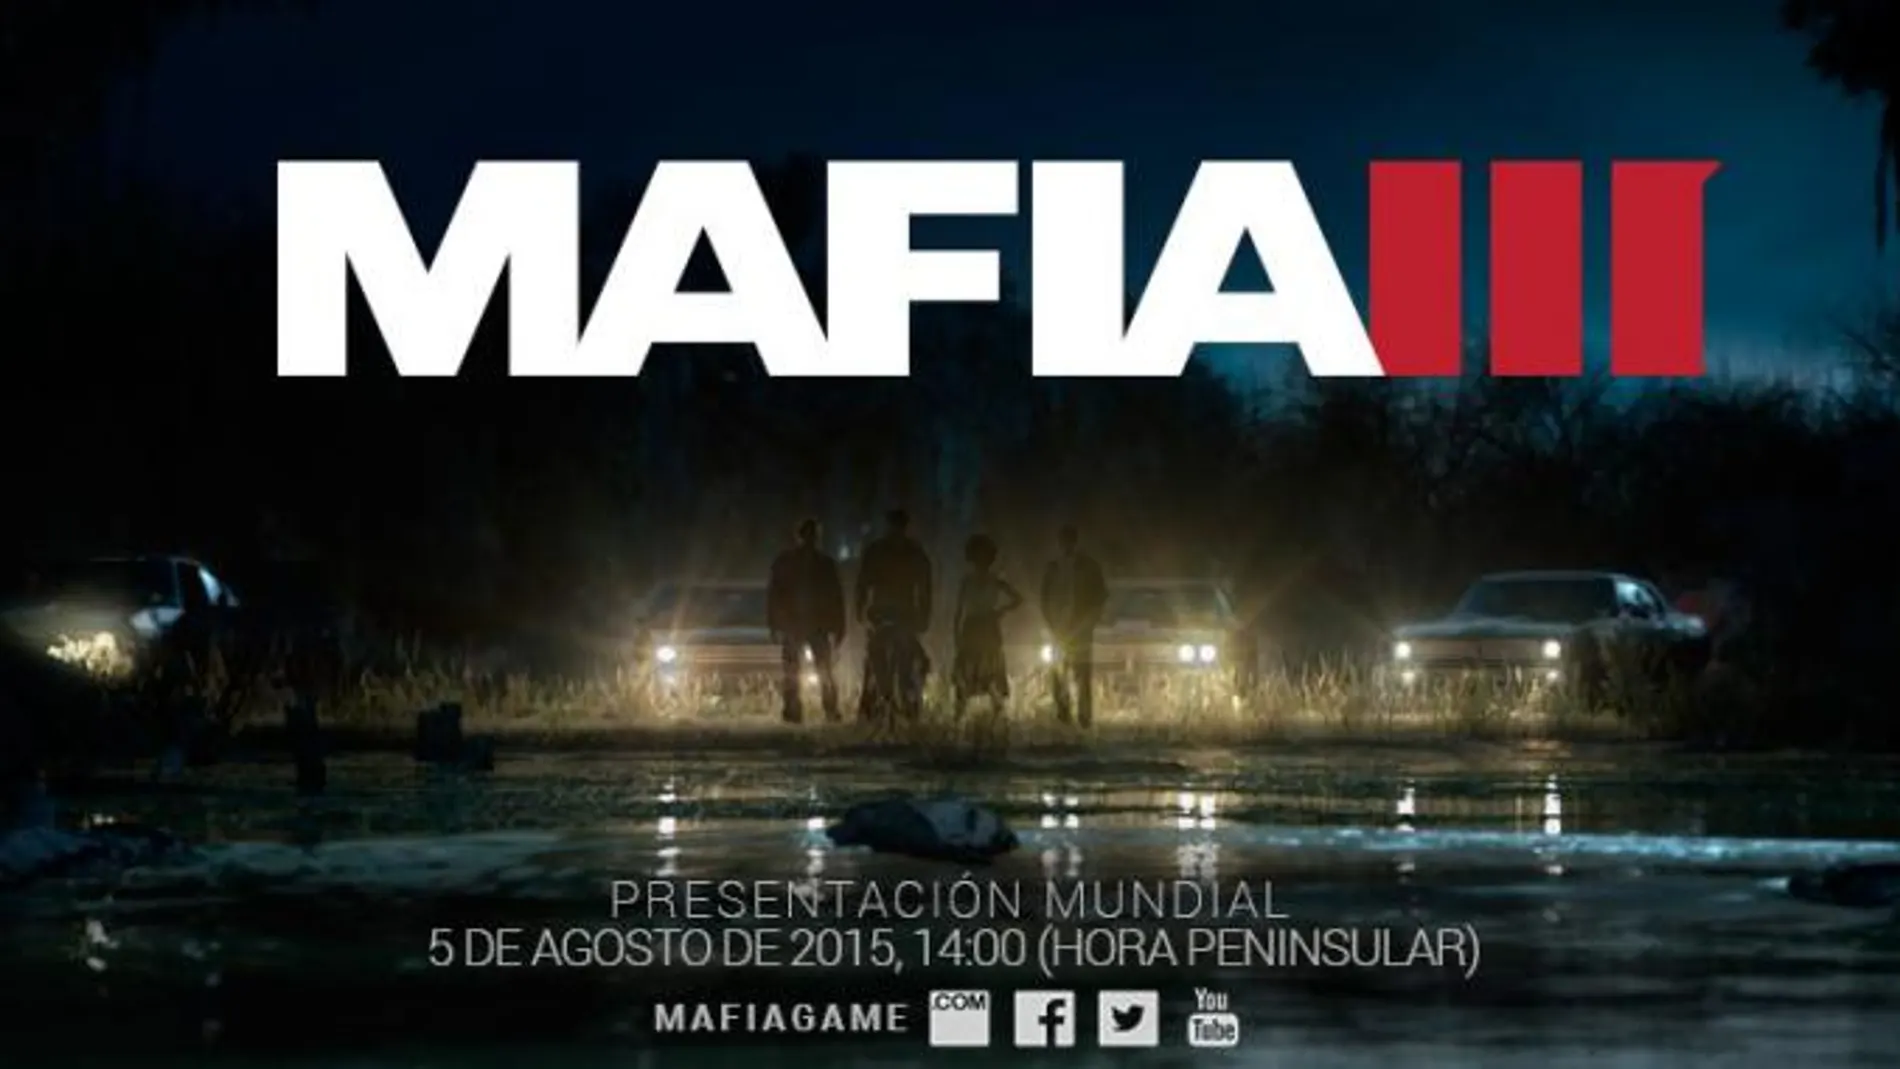 2K confirma el desarrollo de Mafia III, que será presentado oficialmente en agosto